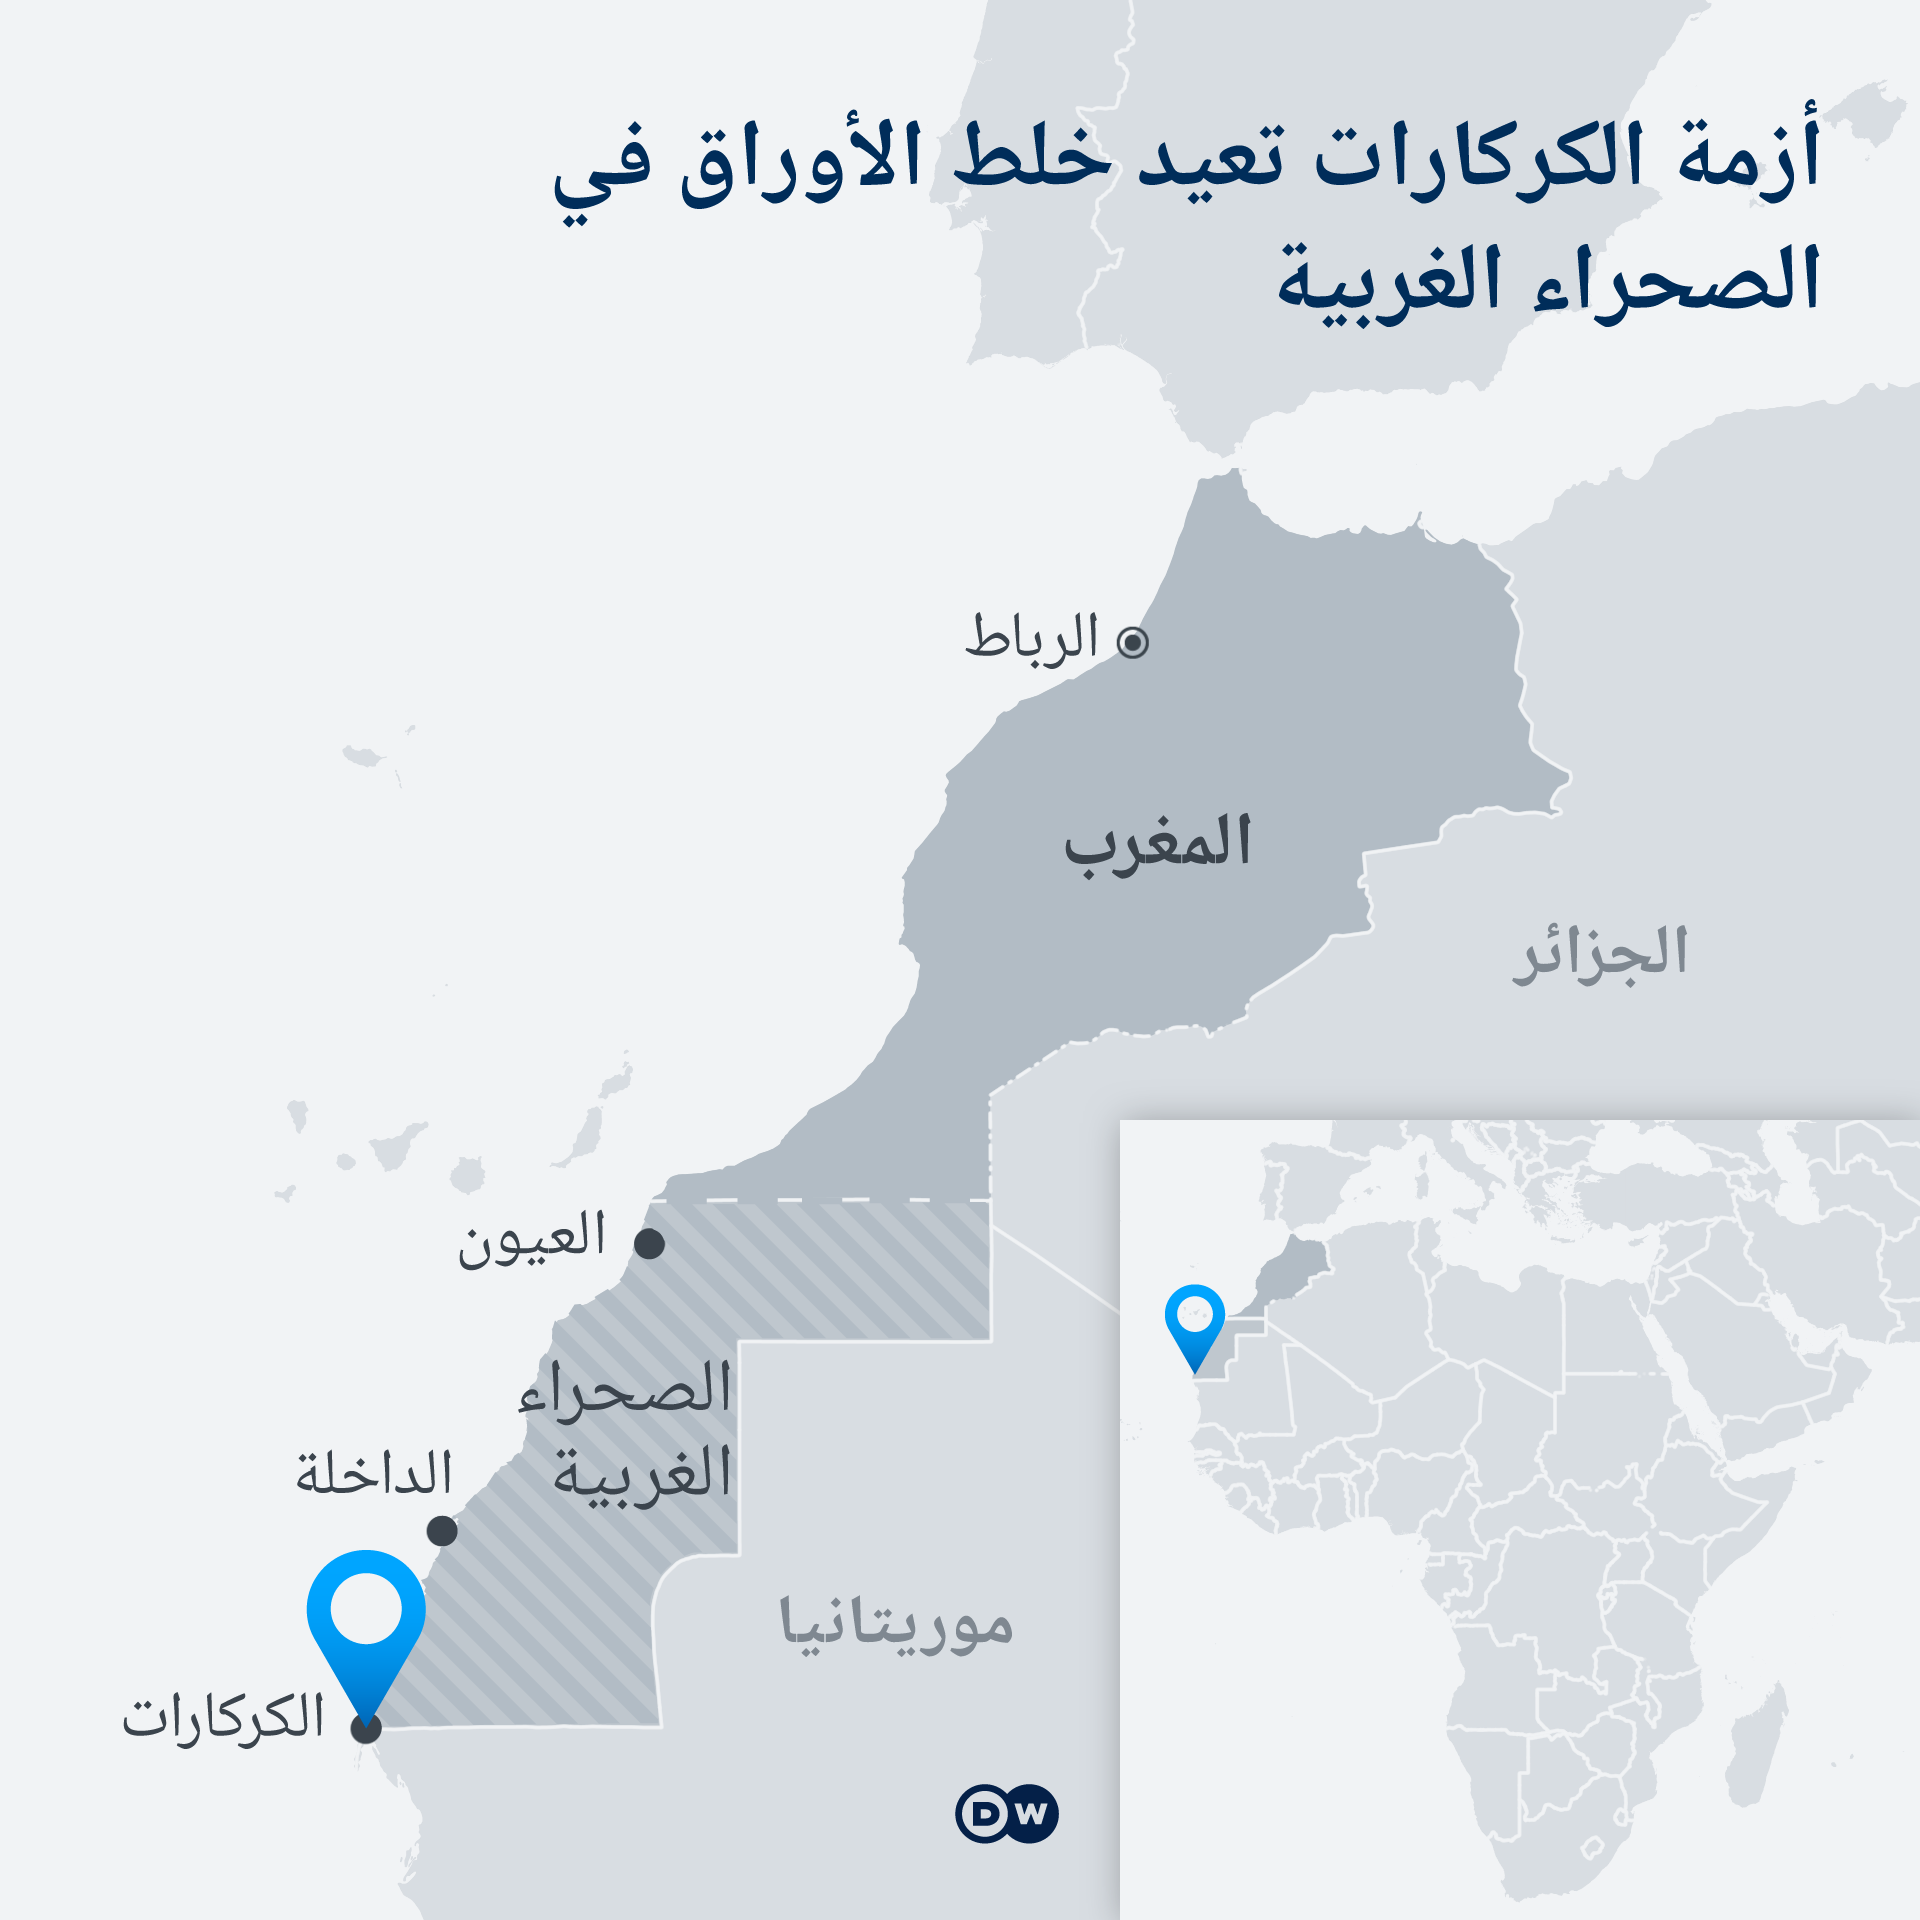 خريطة المغرب بما فيها الصحراء الغربية. WESTSAHARA MAROKKO MAP DW